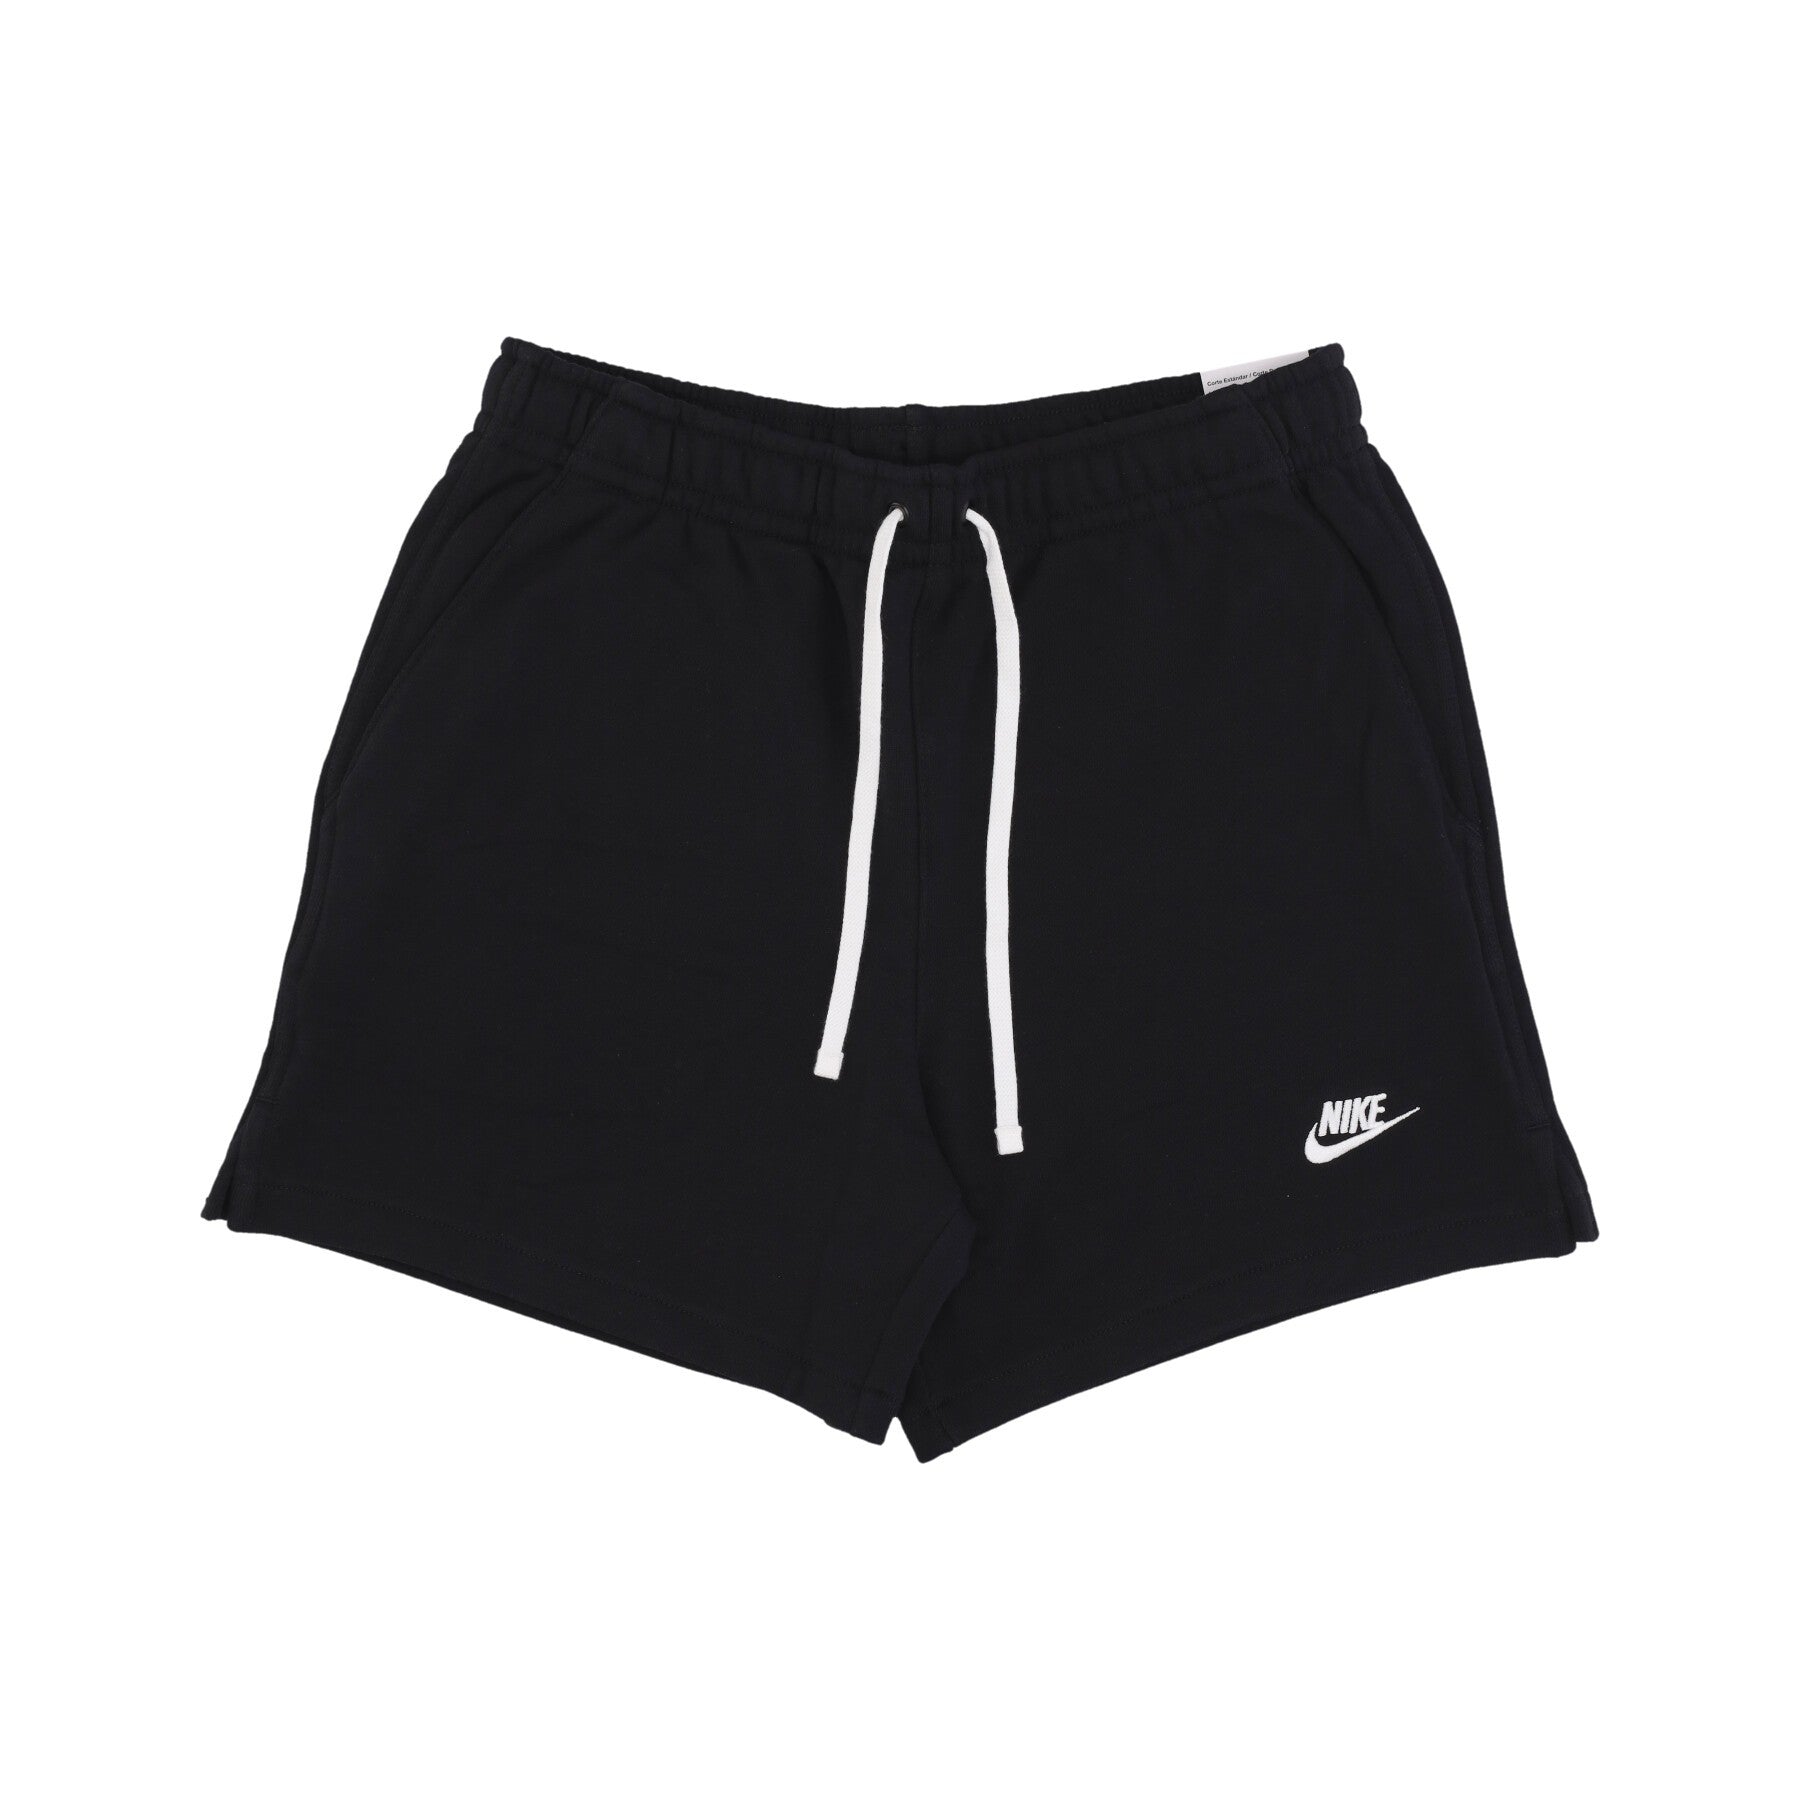 Nike, Pantalone Tuta Leggero Uomo Club Fleece Terry Flow Short, Black/white/white